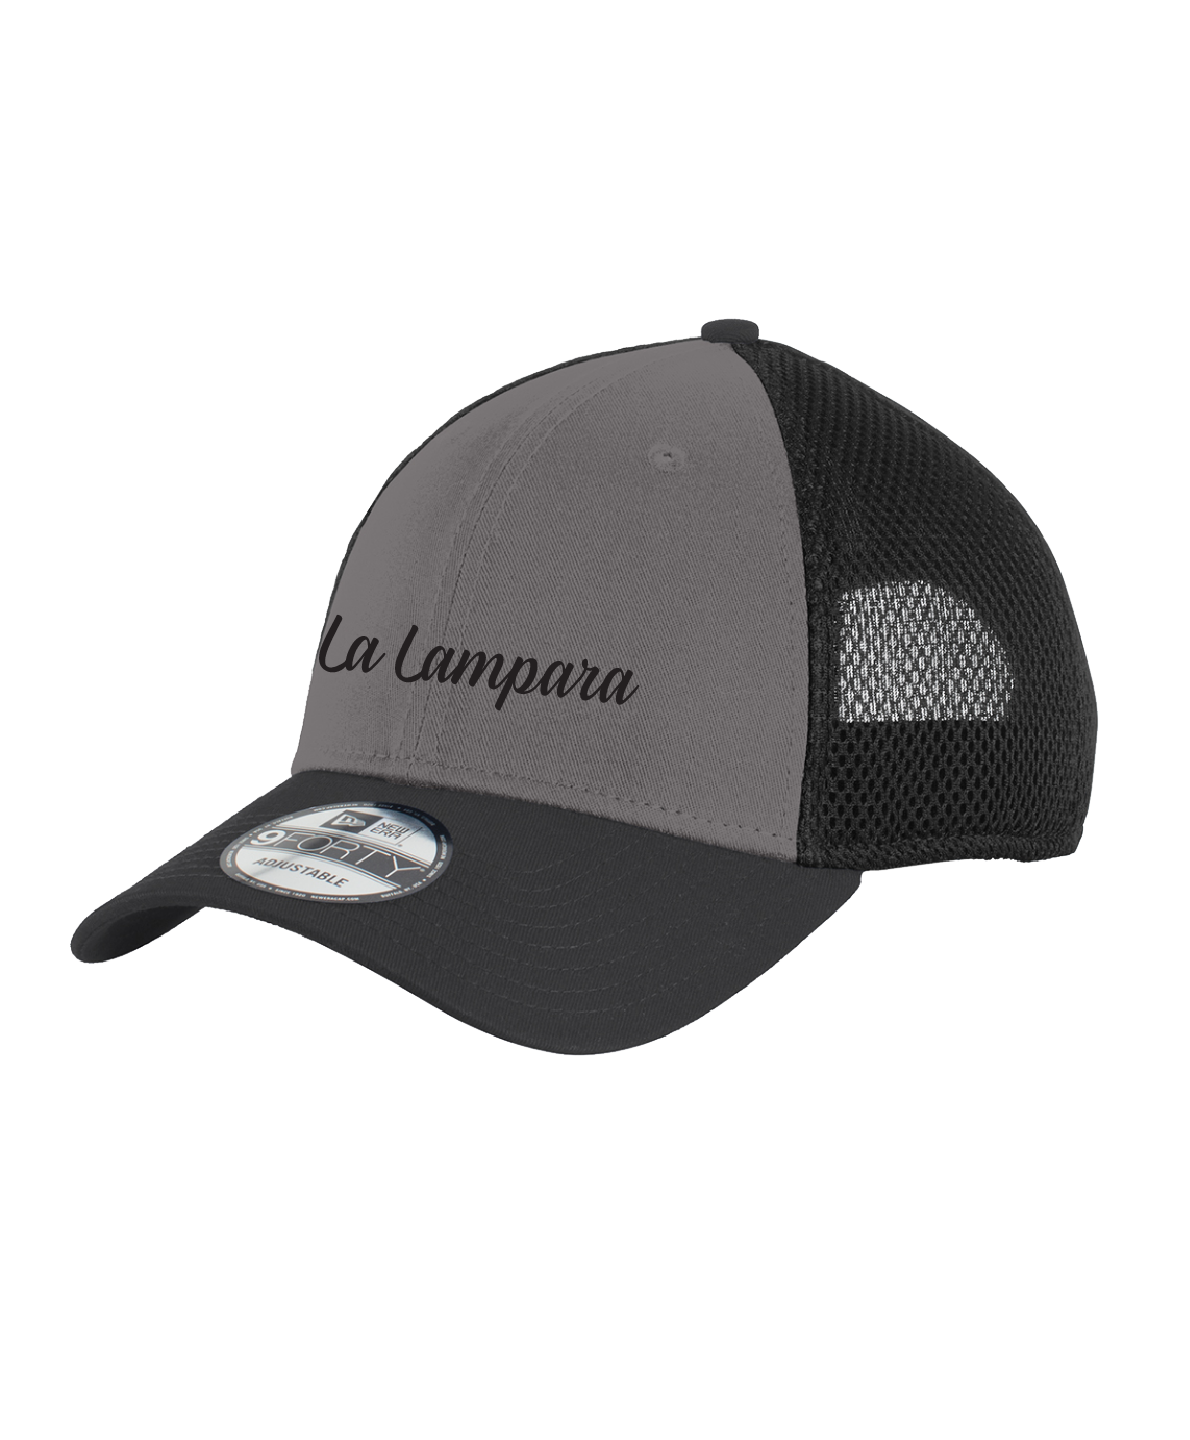 La Lampara - New Era® - Snapback Contrast Front Mesh Cap